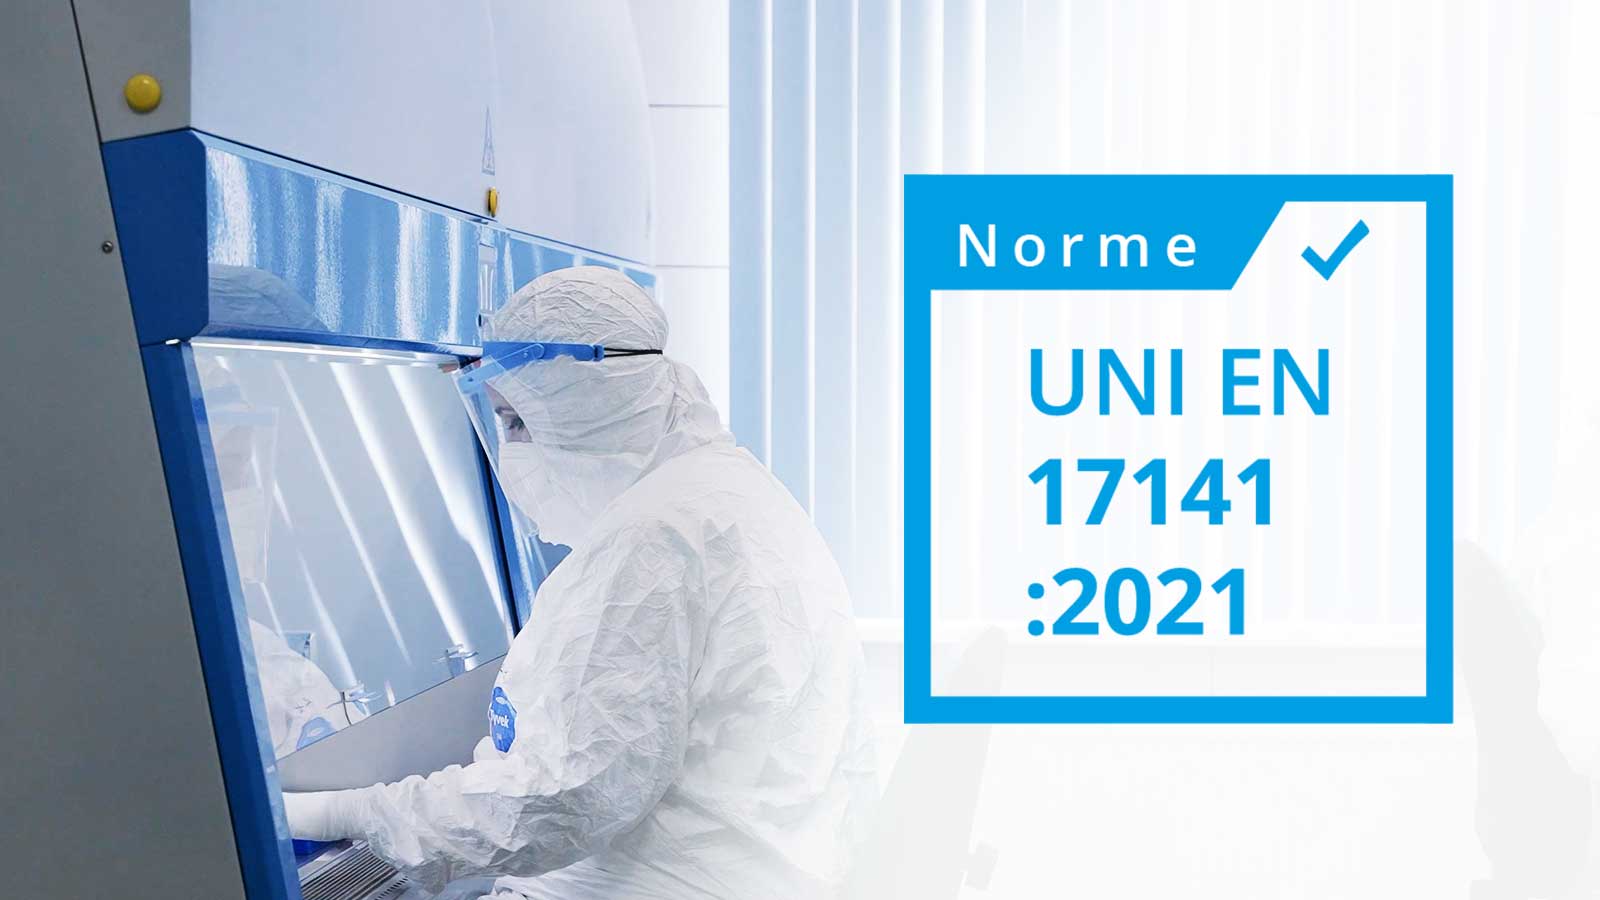 Logo norme UNI NF EN 17141 écrit dans un carrer blanc avec un contour bleu ciel. le fond de l'image est une photo d'une salle blanche avec un chercheur qui réalise des tests